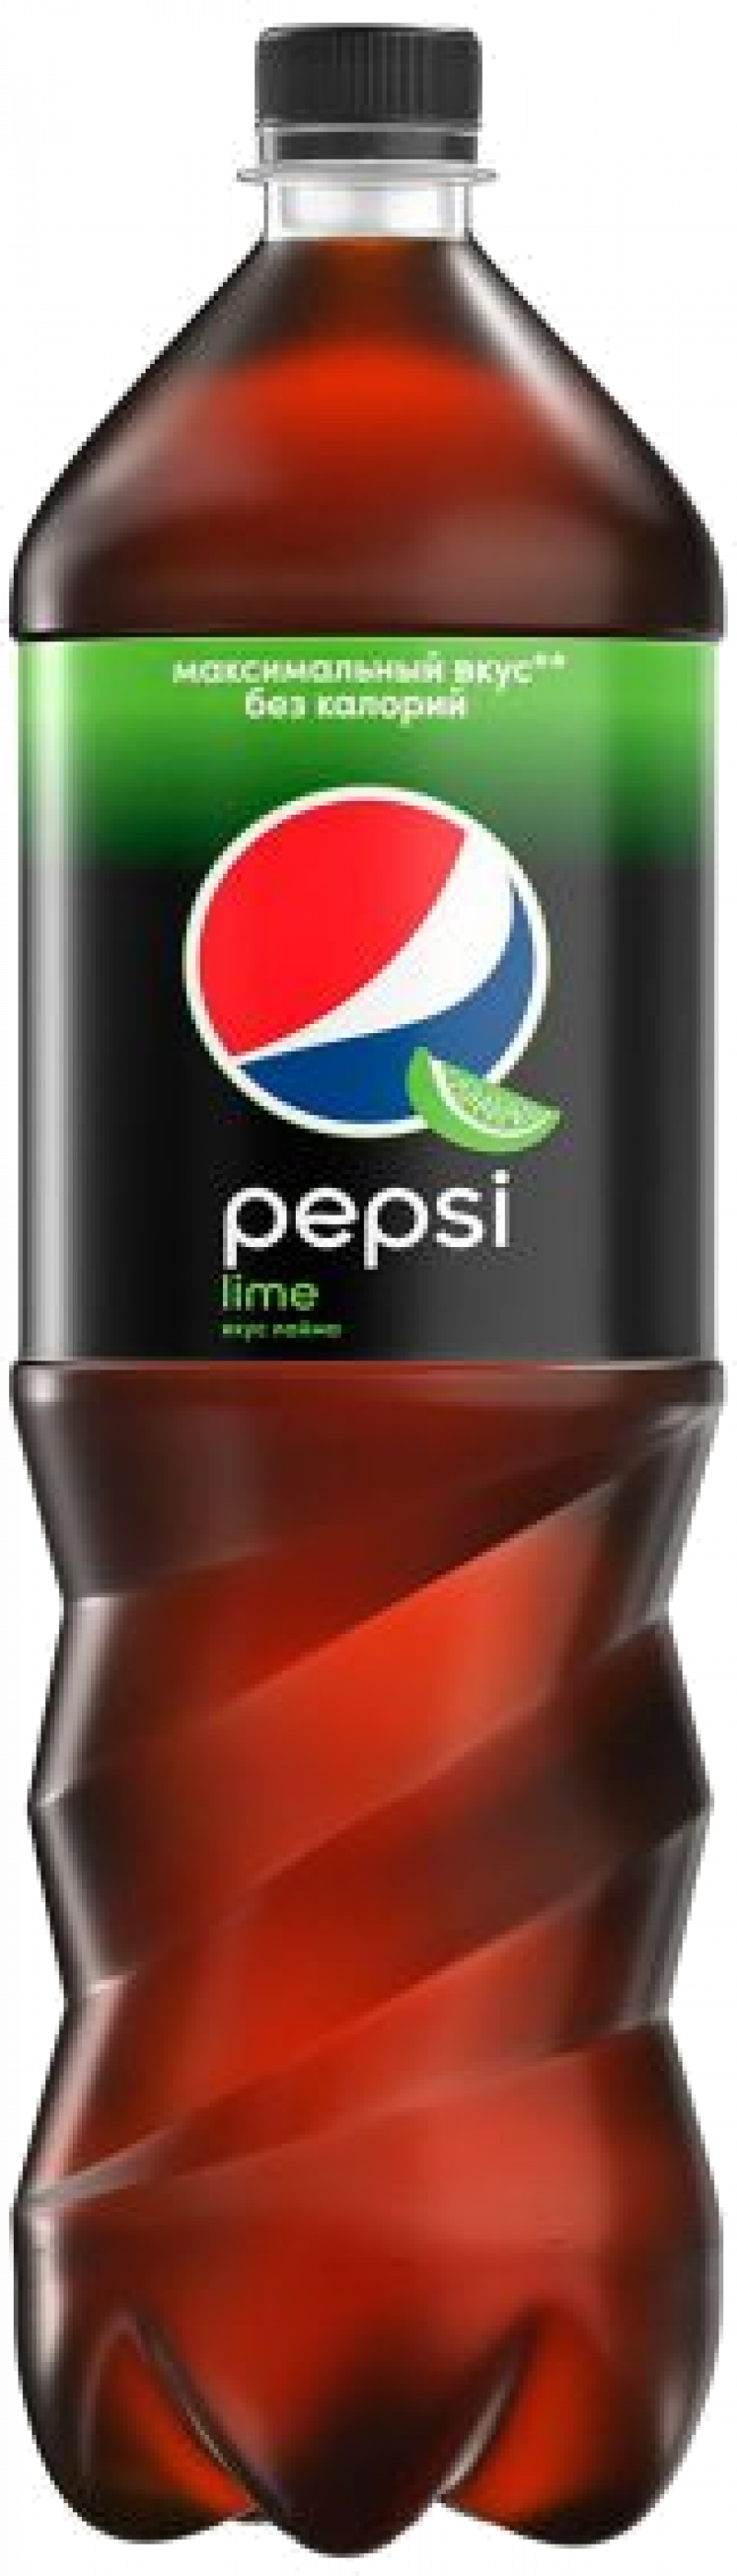 Напиток ТМ Pepsi Lime (без сахара) 1.5л